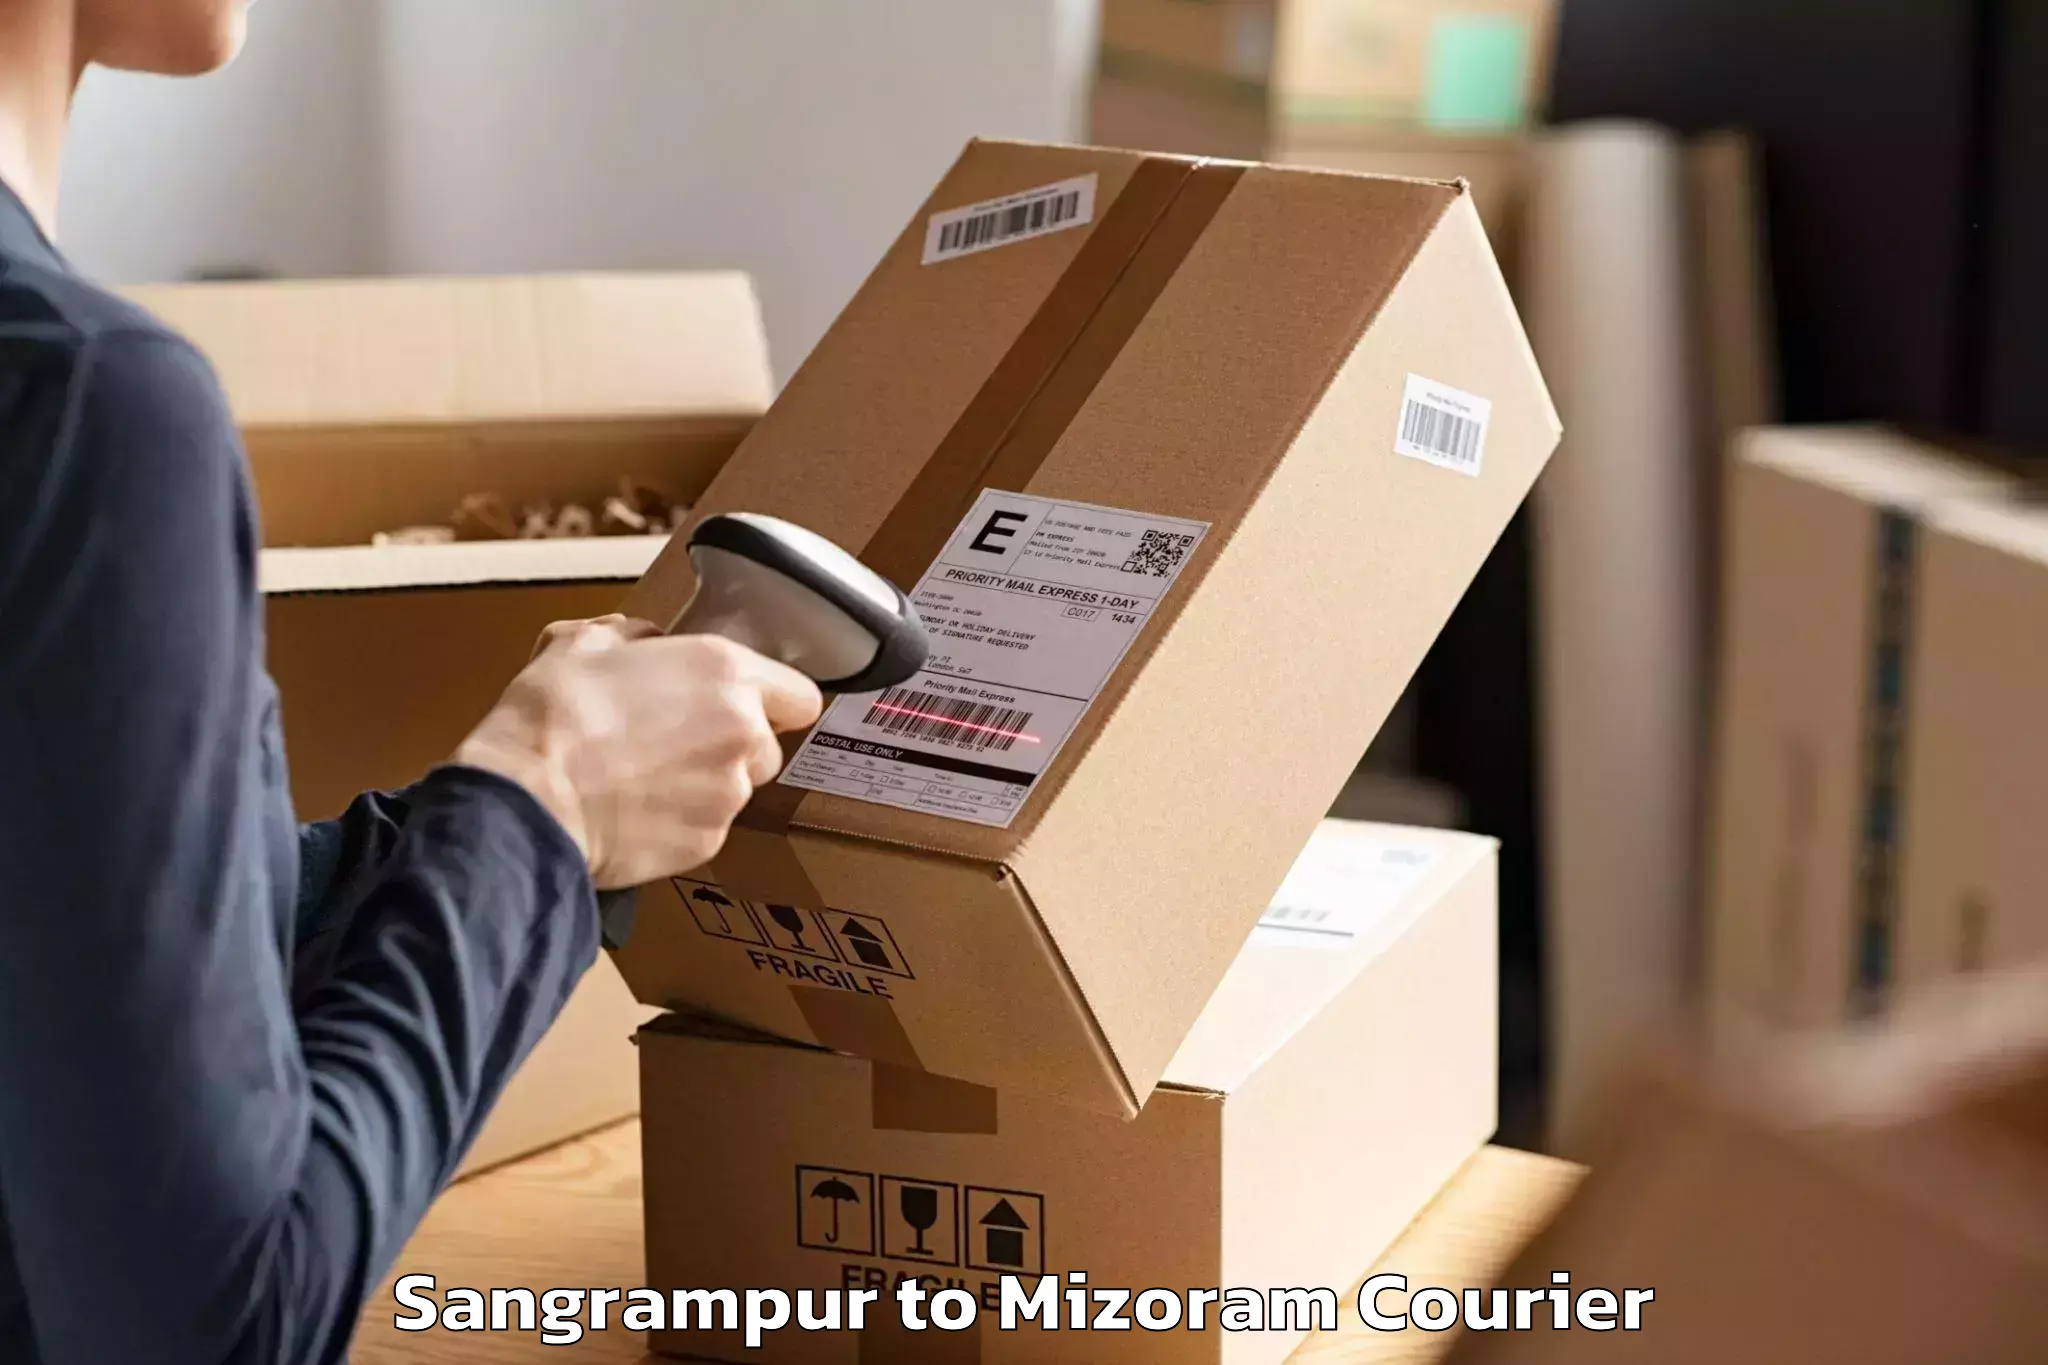 Furniture moving experts Sangrampur to Khawzawl